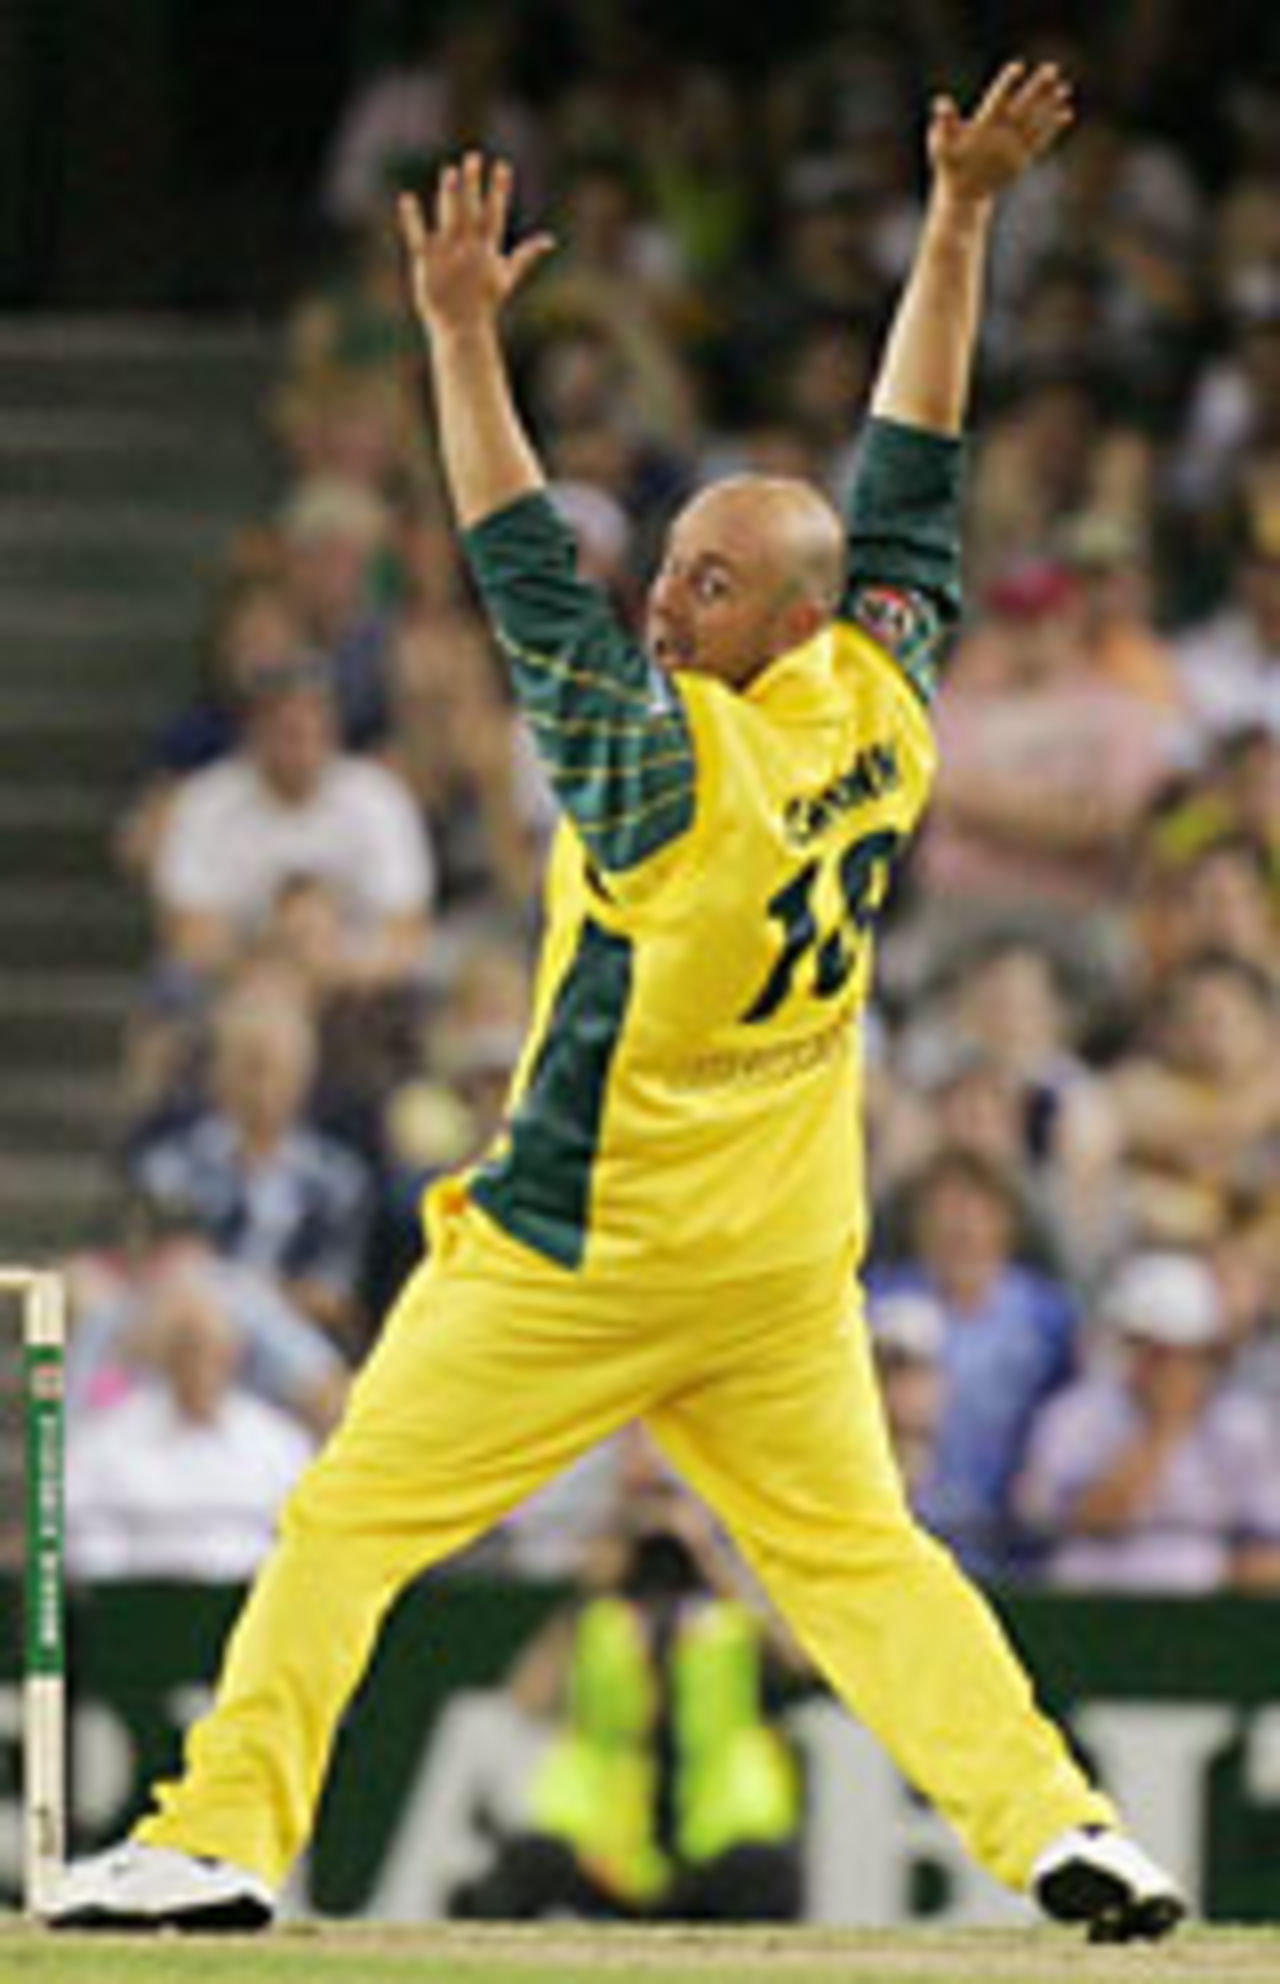 Darren Lehmann - Cricketers Wearing Number 10 Jersey | KreedOn